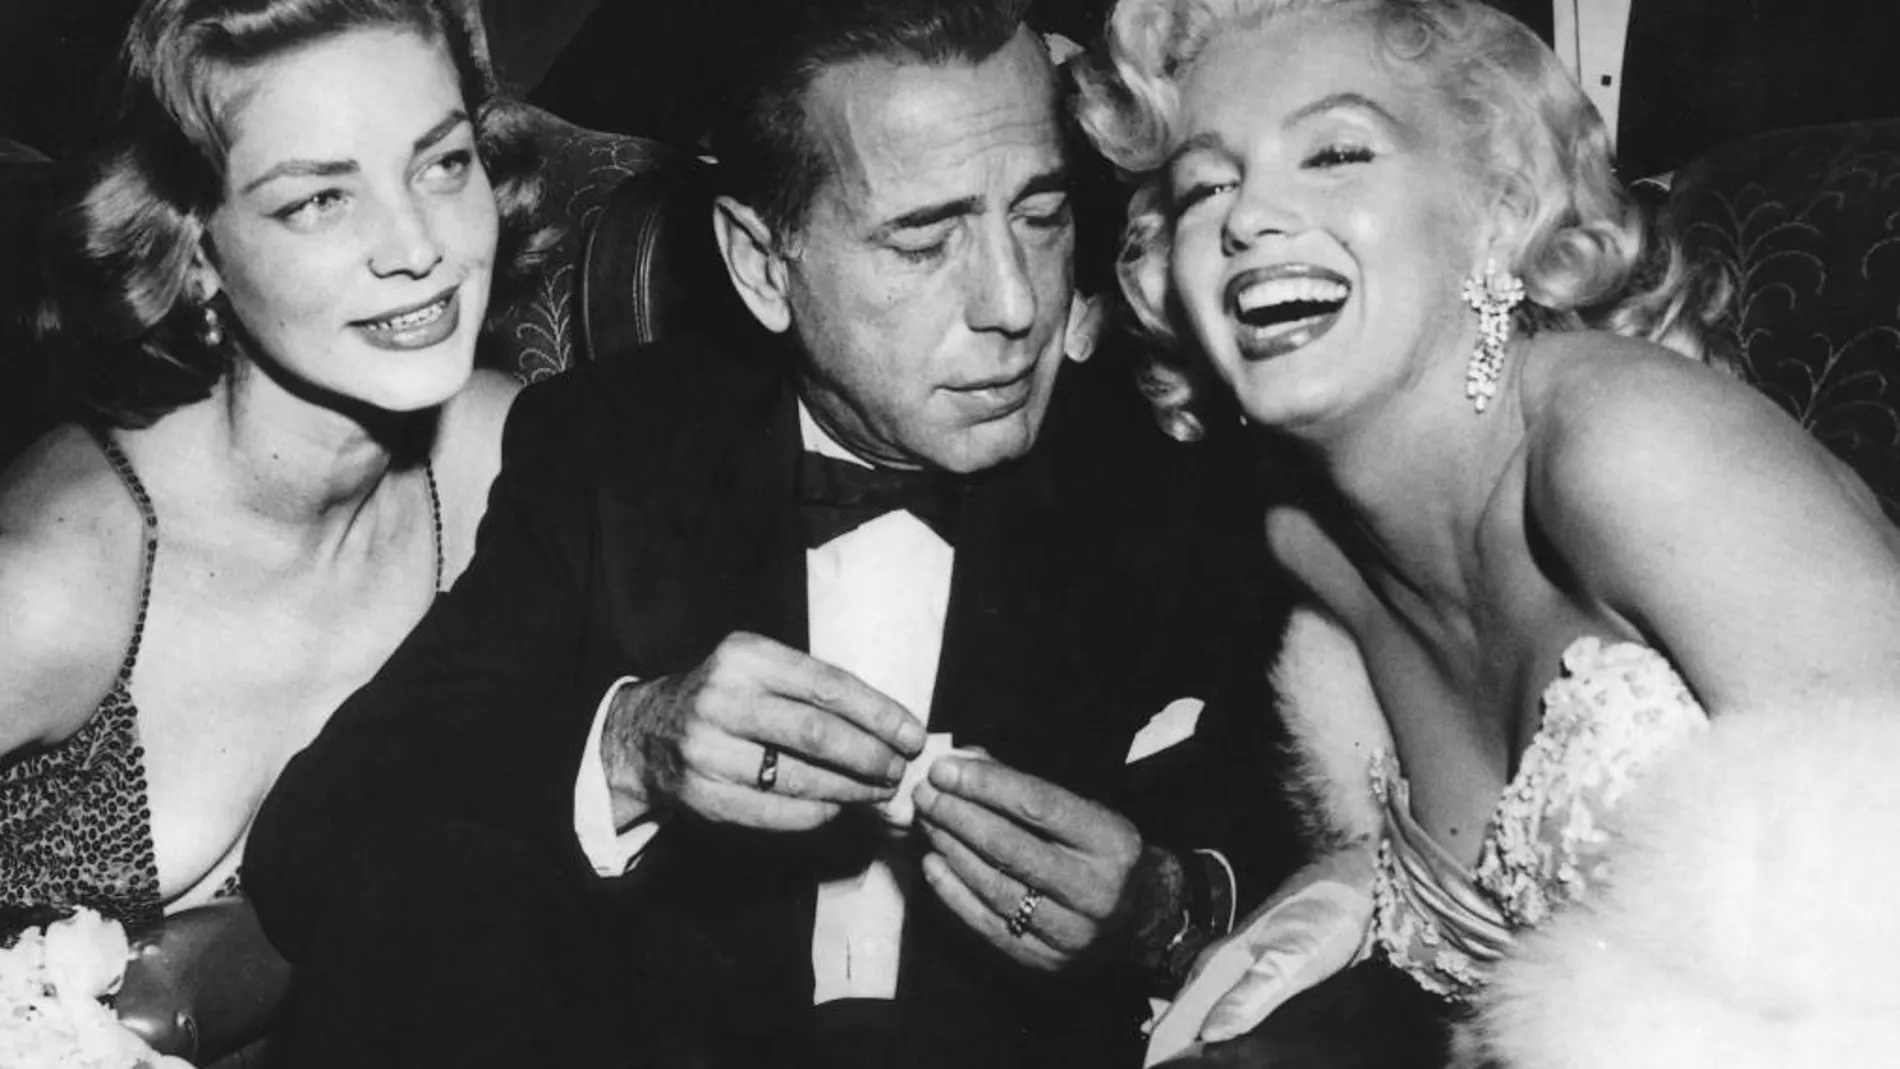 Bacall, Bogart y Monrroe